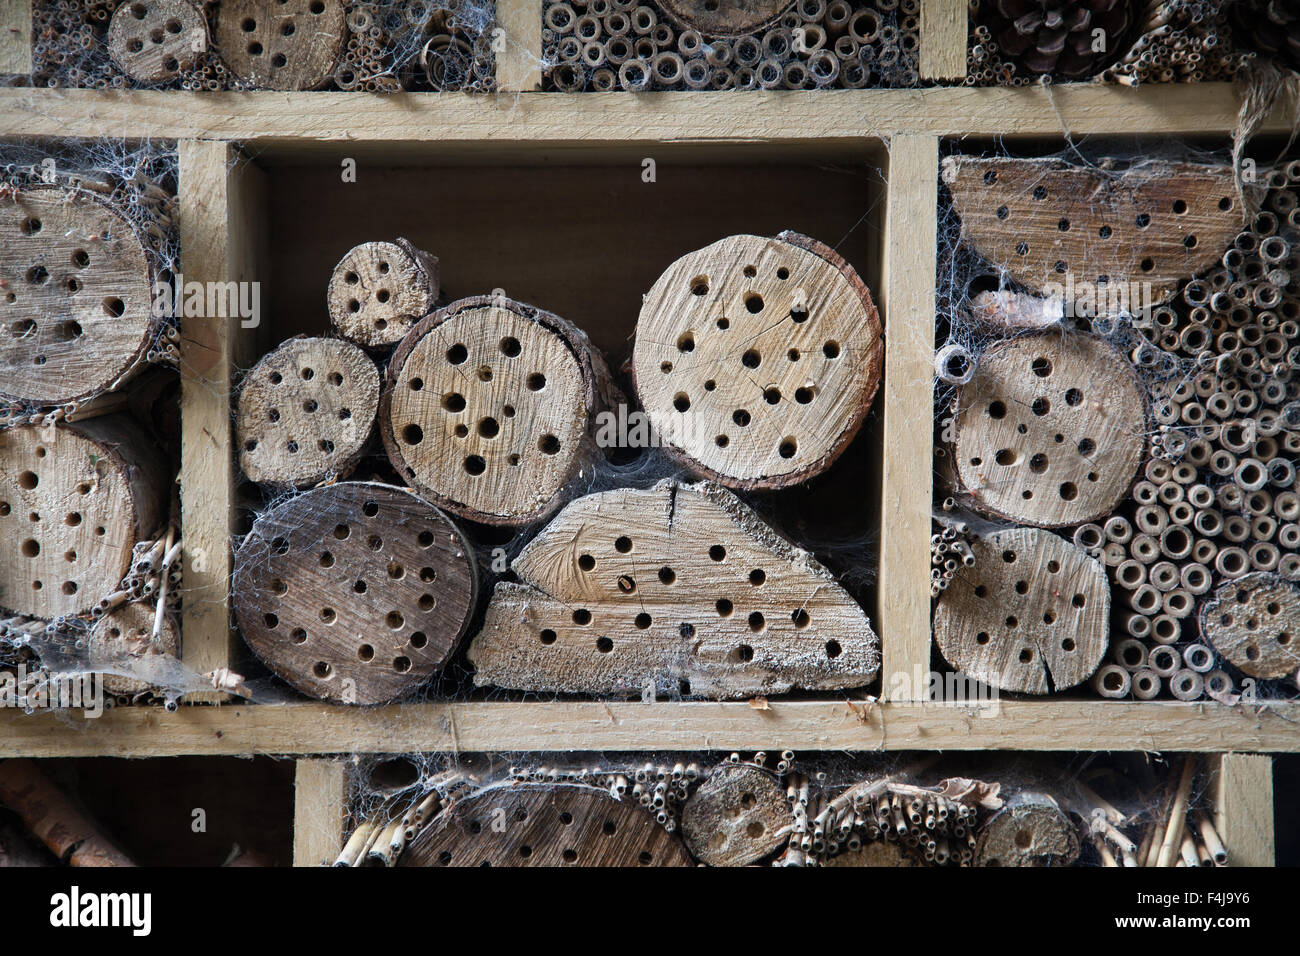 Garden hôtel bug fait à partir d'un cadre en bois contenant des souches d'arbre avec les trous percés et les cannes de bambou tous couverts dans les toiles d'araignée Banque D'Images